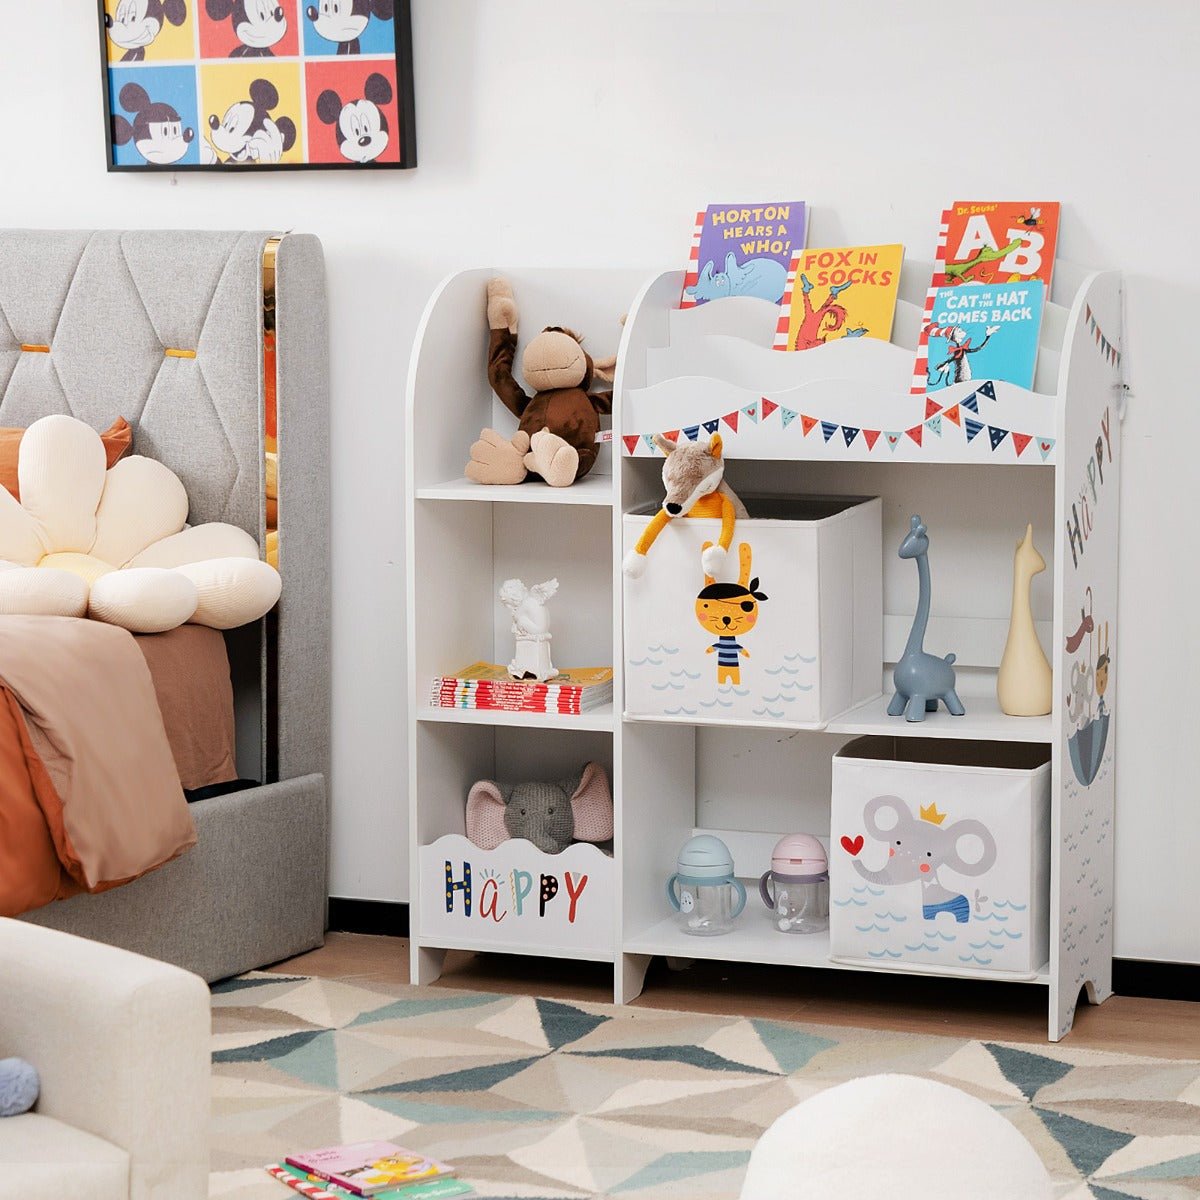 Bookshelf Toy Storage Box with Display Shelf and Bin - Organize Playtime